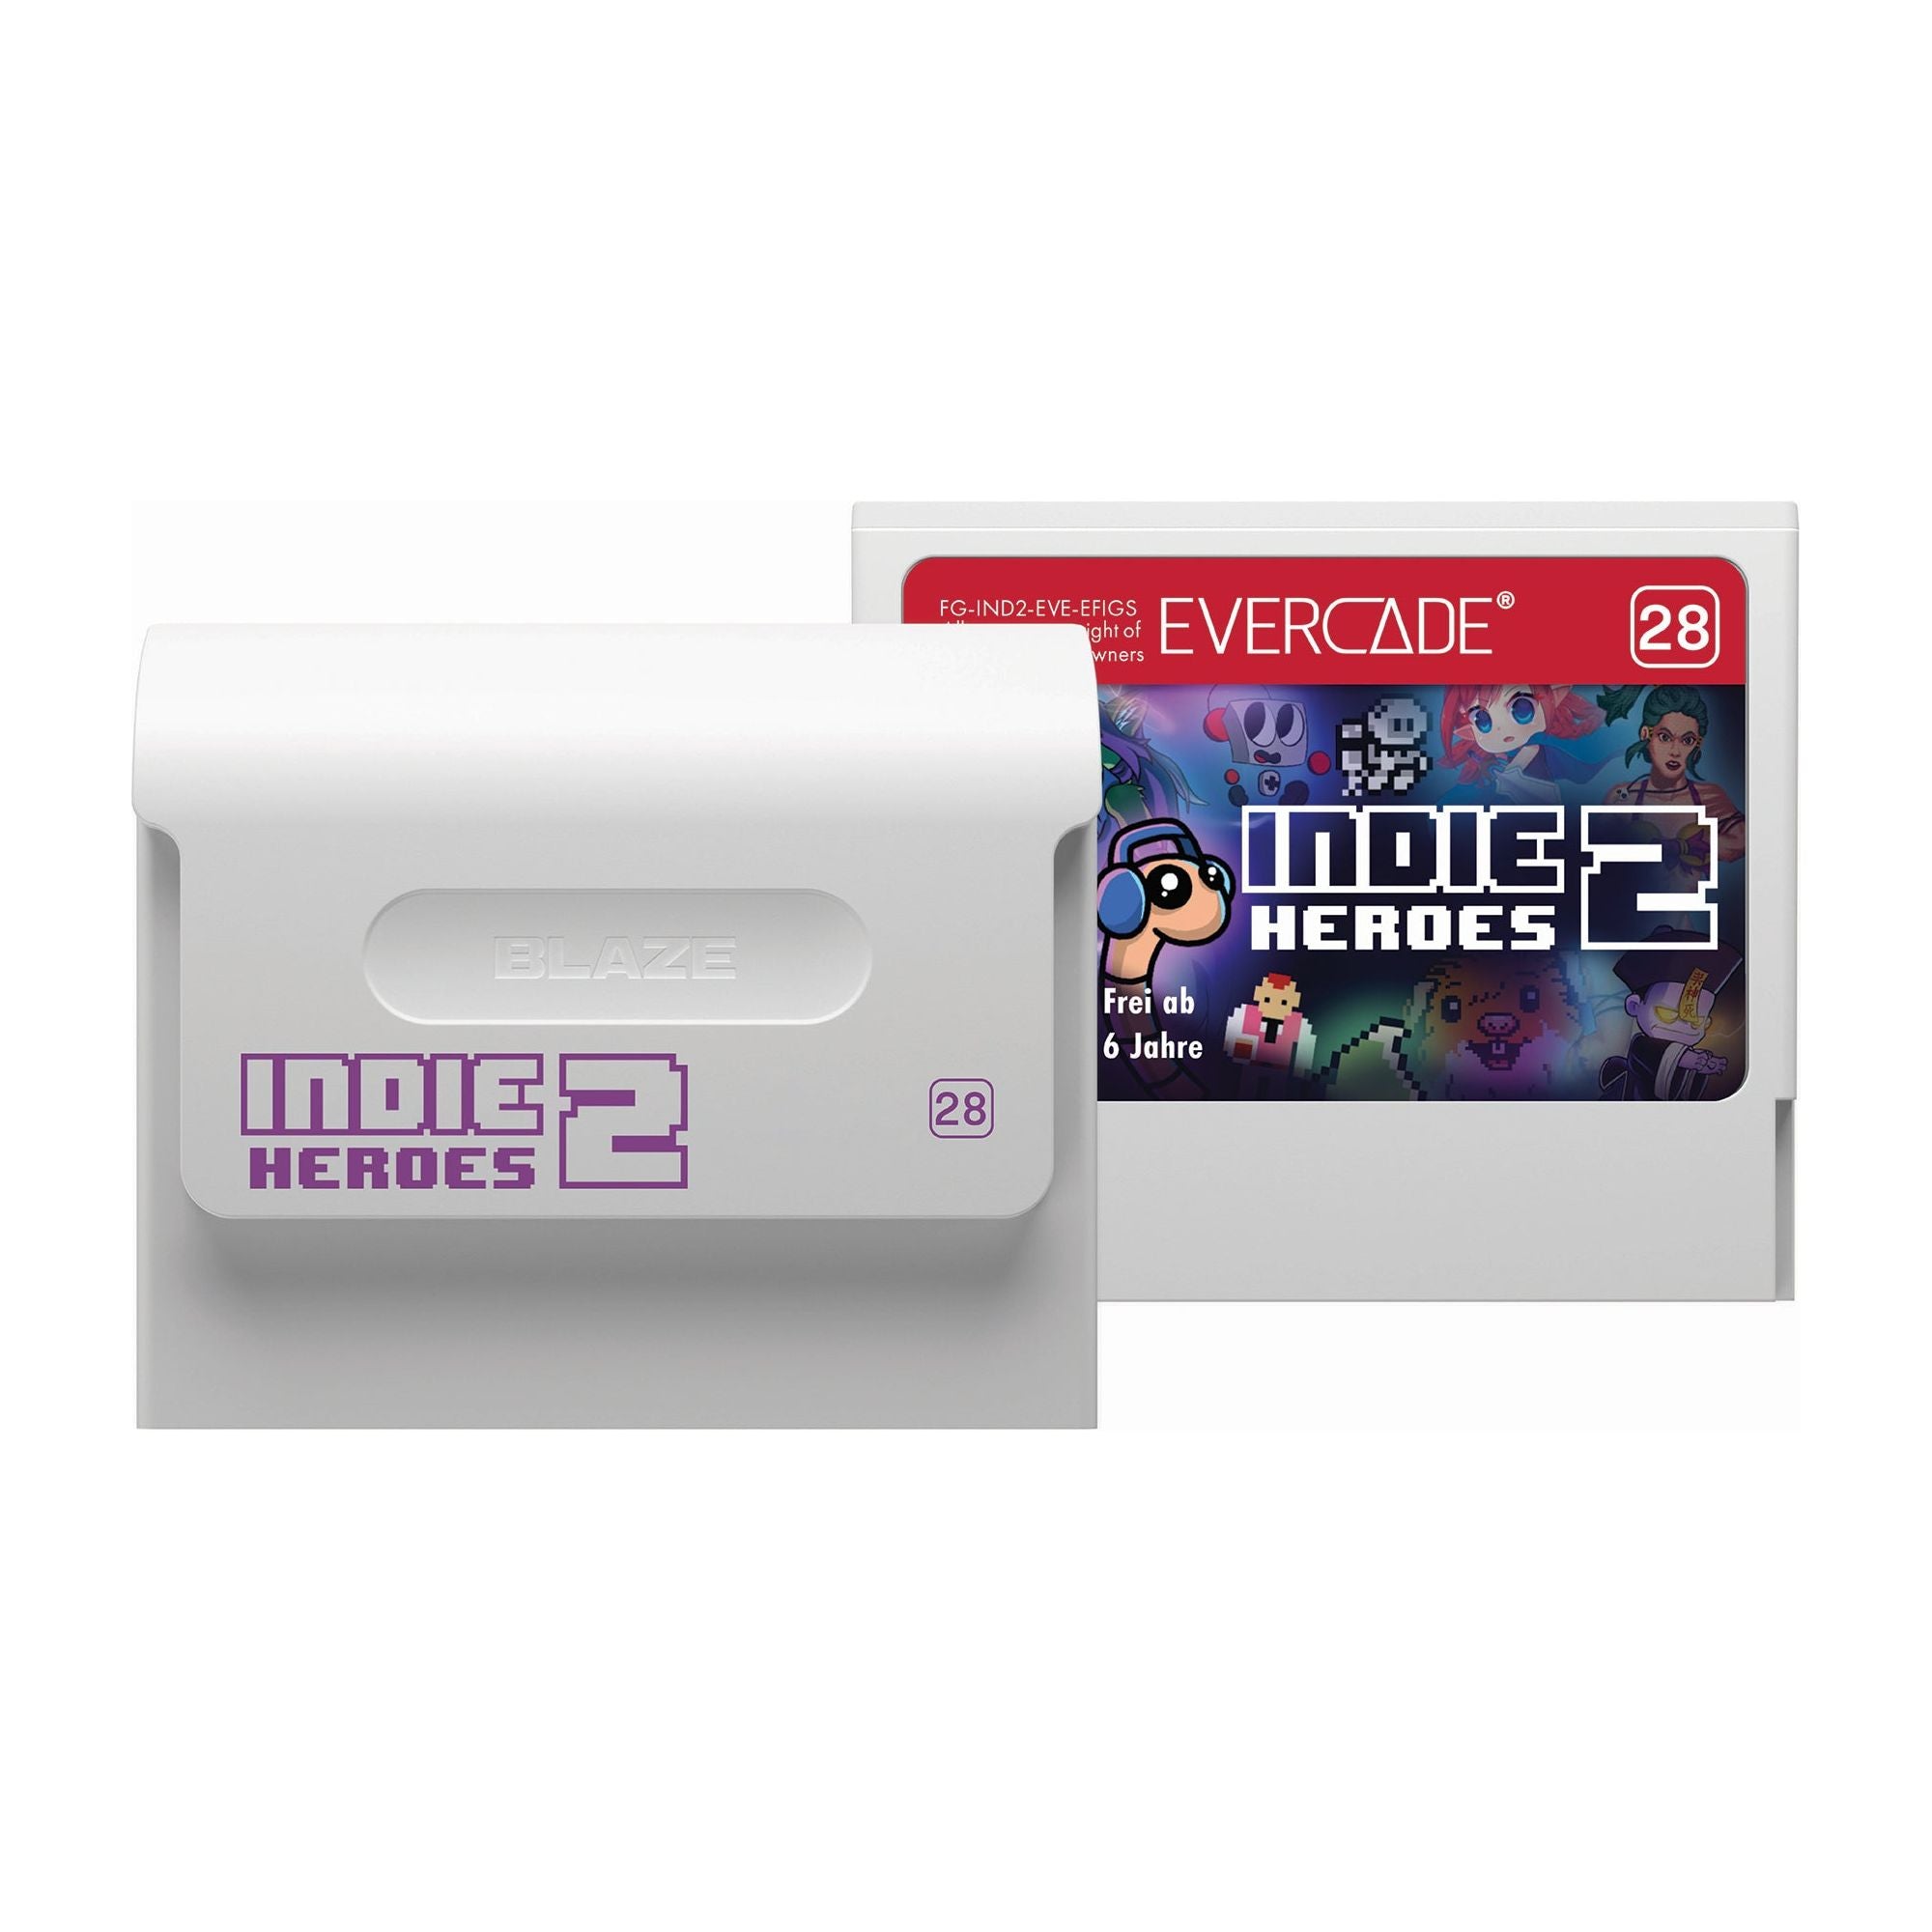 Evercade INDIE Heroes 2 Cartridge